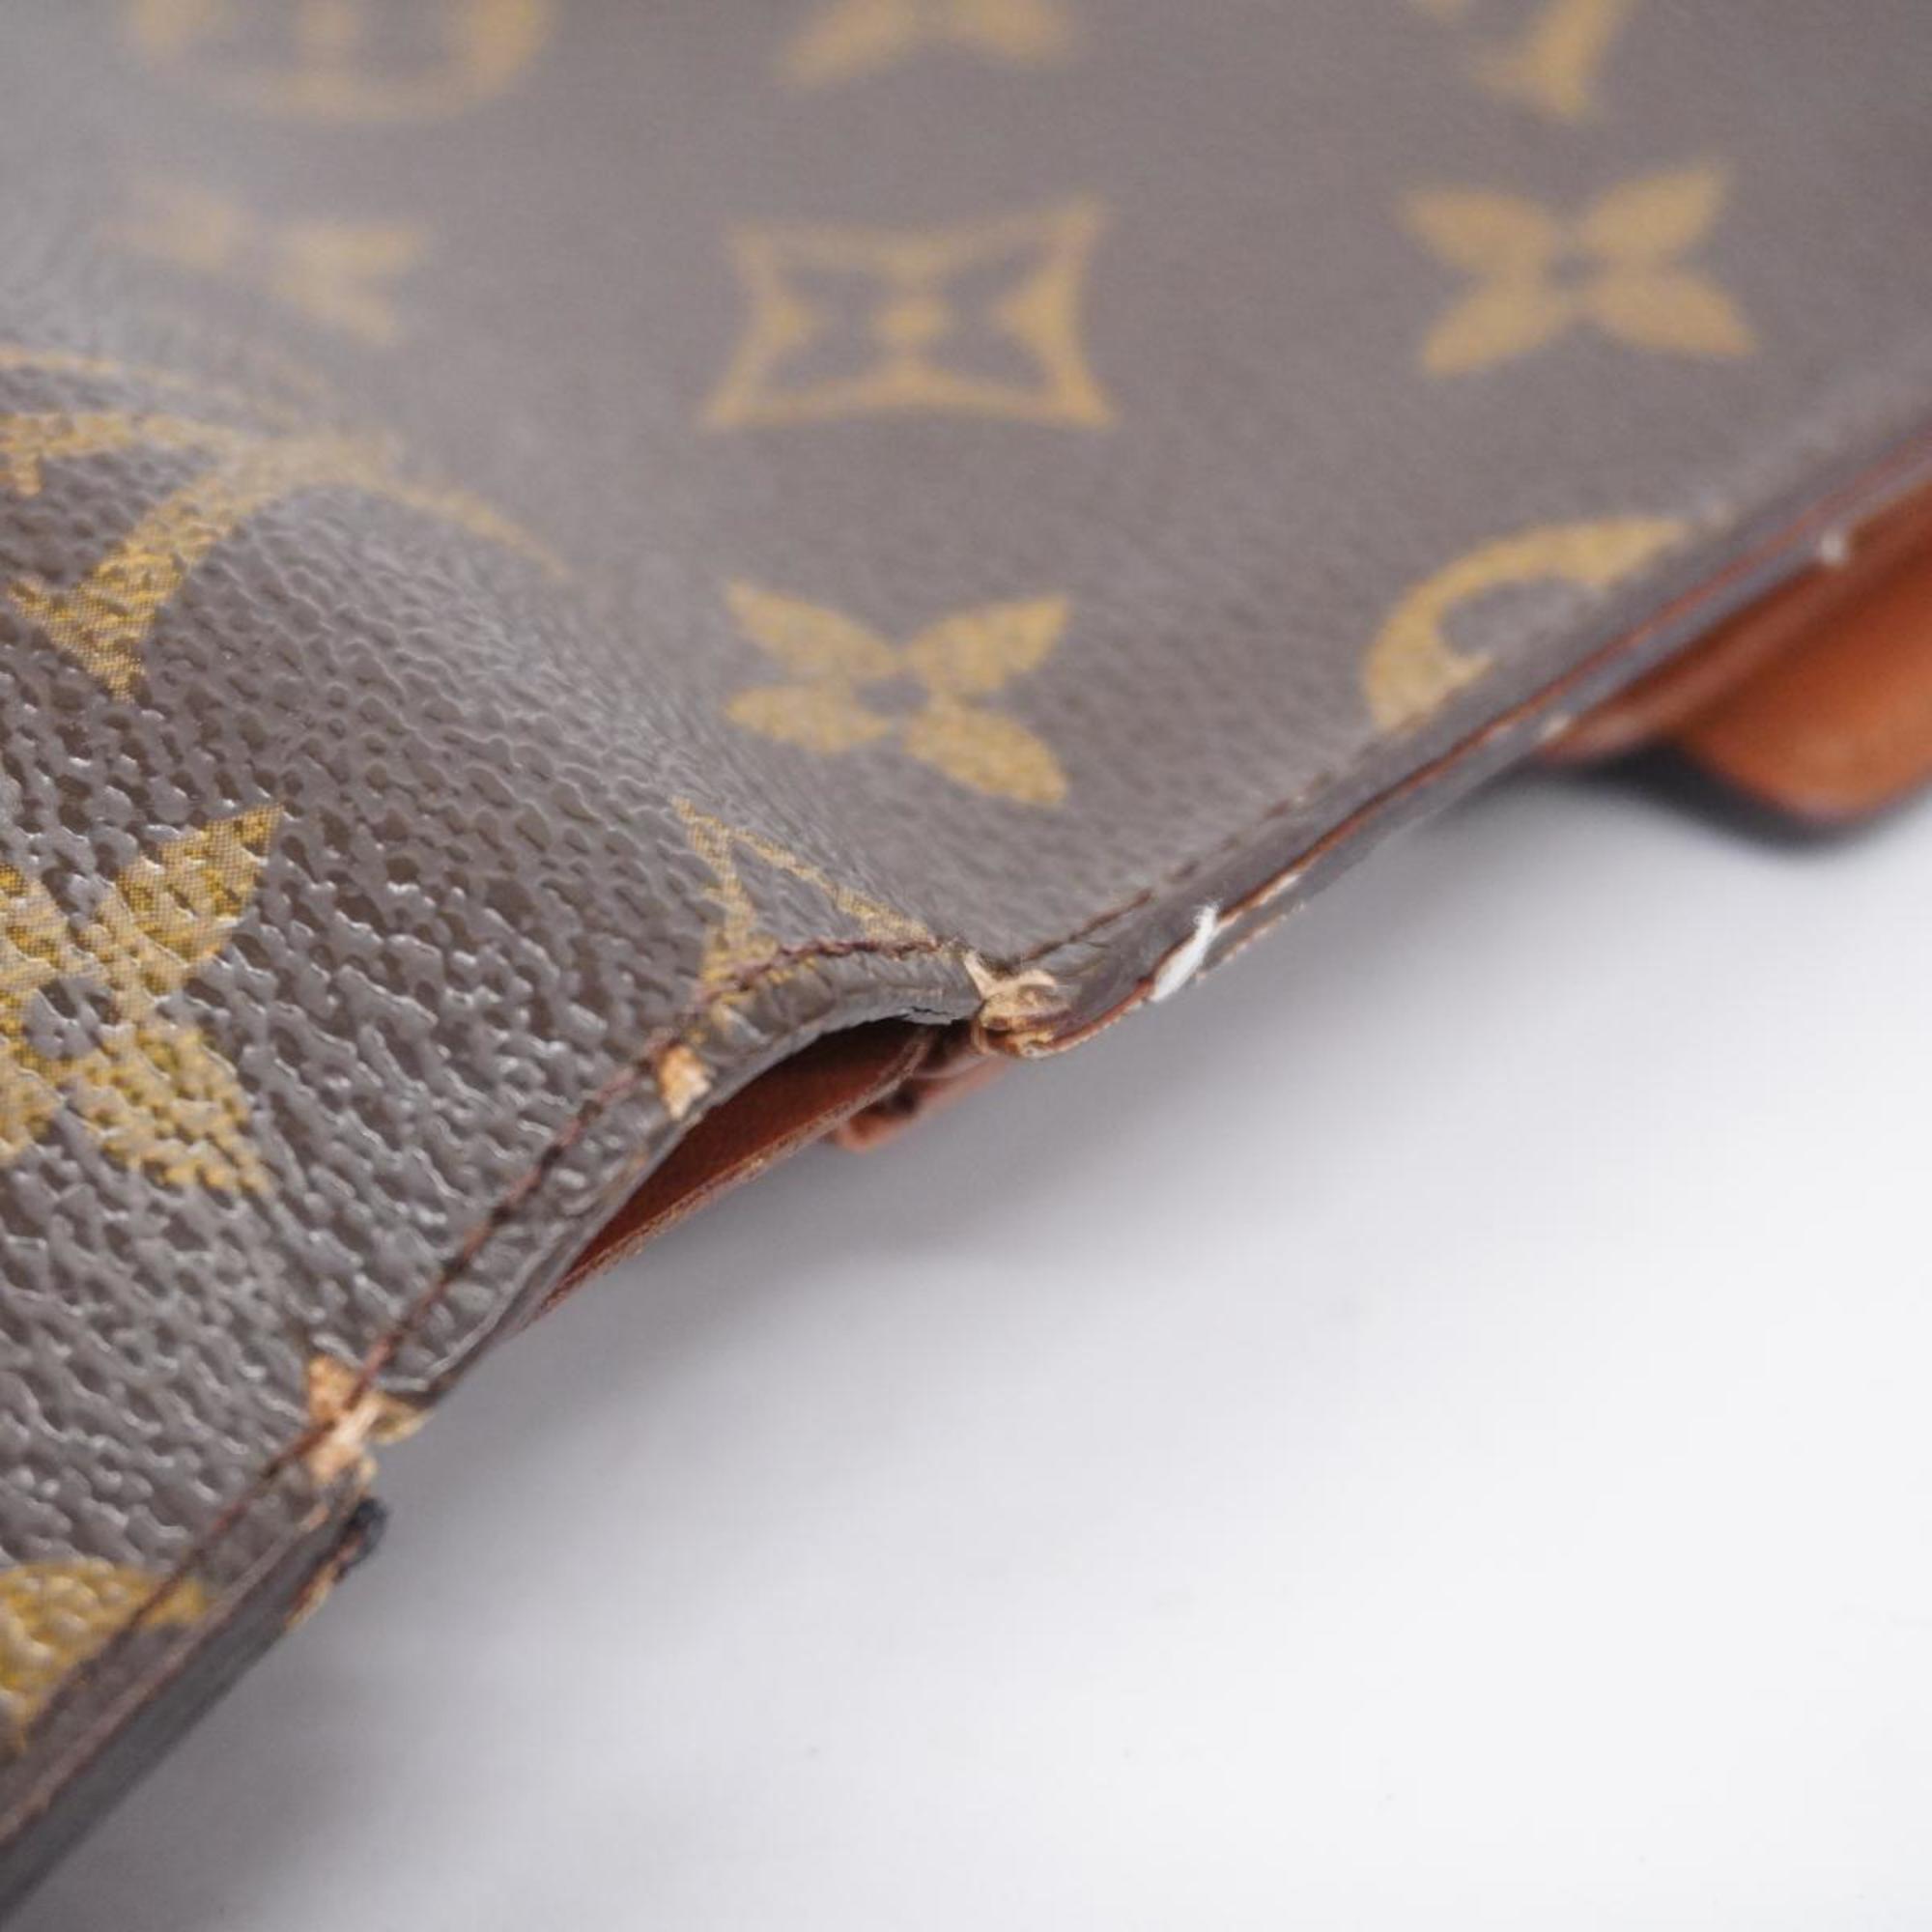 ルイ・ヴィトン(Louis Vuitton) ルイ・ヴィトン 三つ折り財布 モノグラム ポルトトレゾールエテュイパピエ M61202 ブラウンレディース